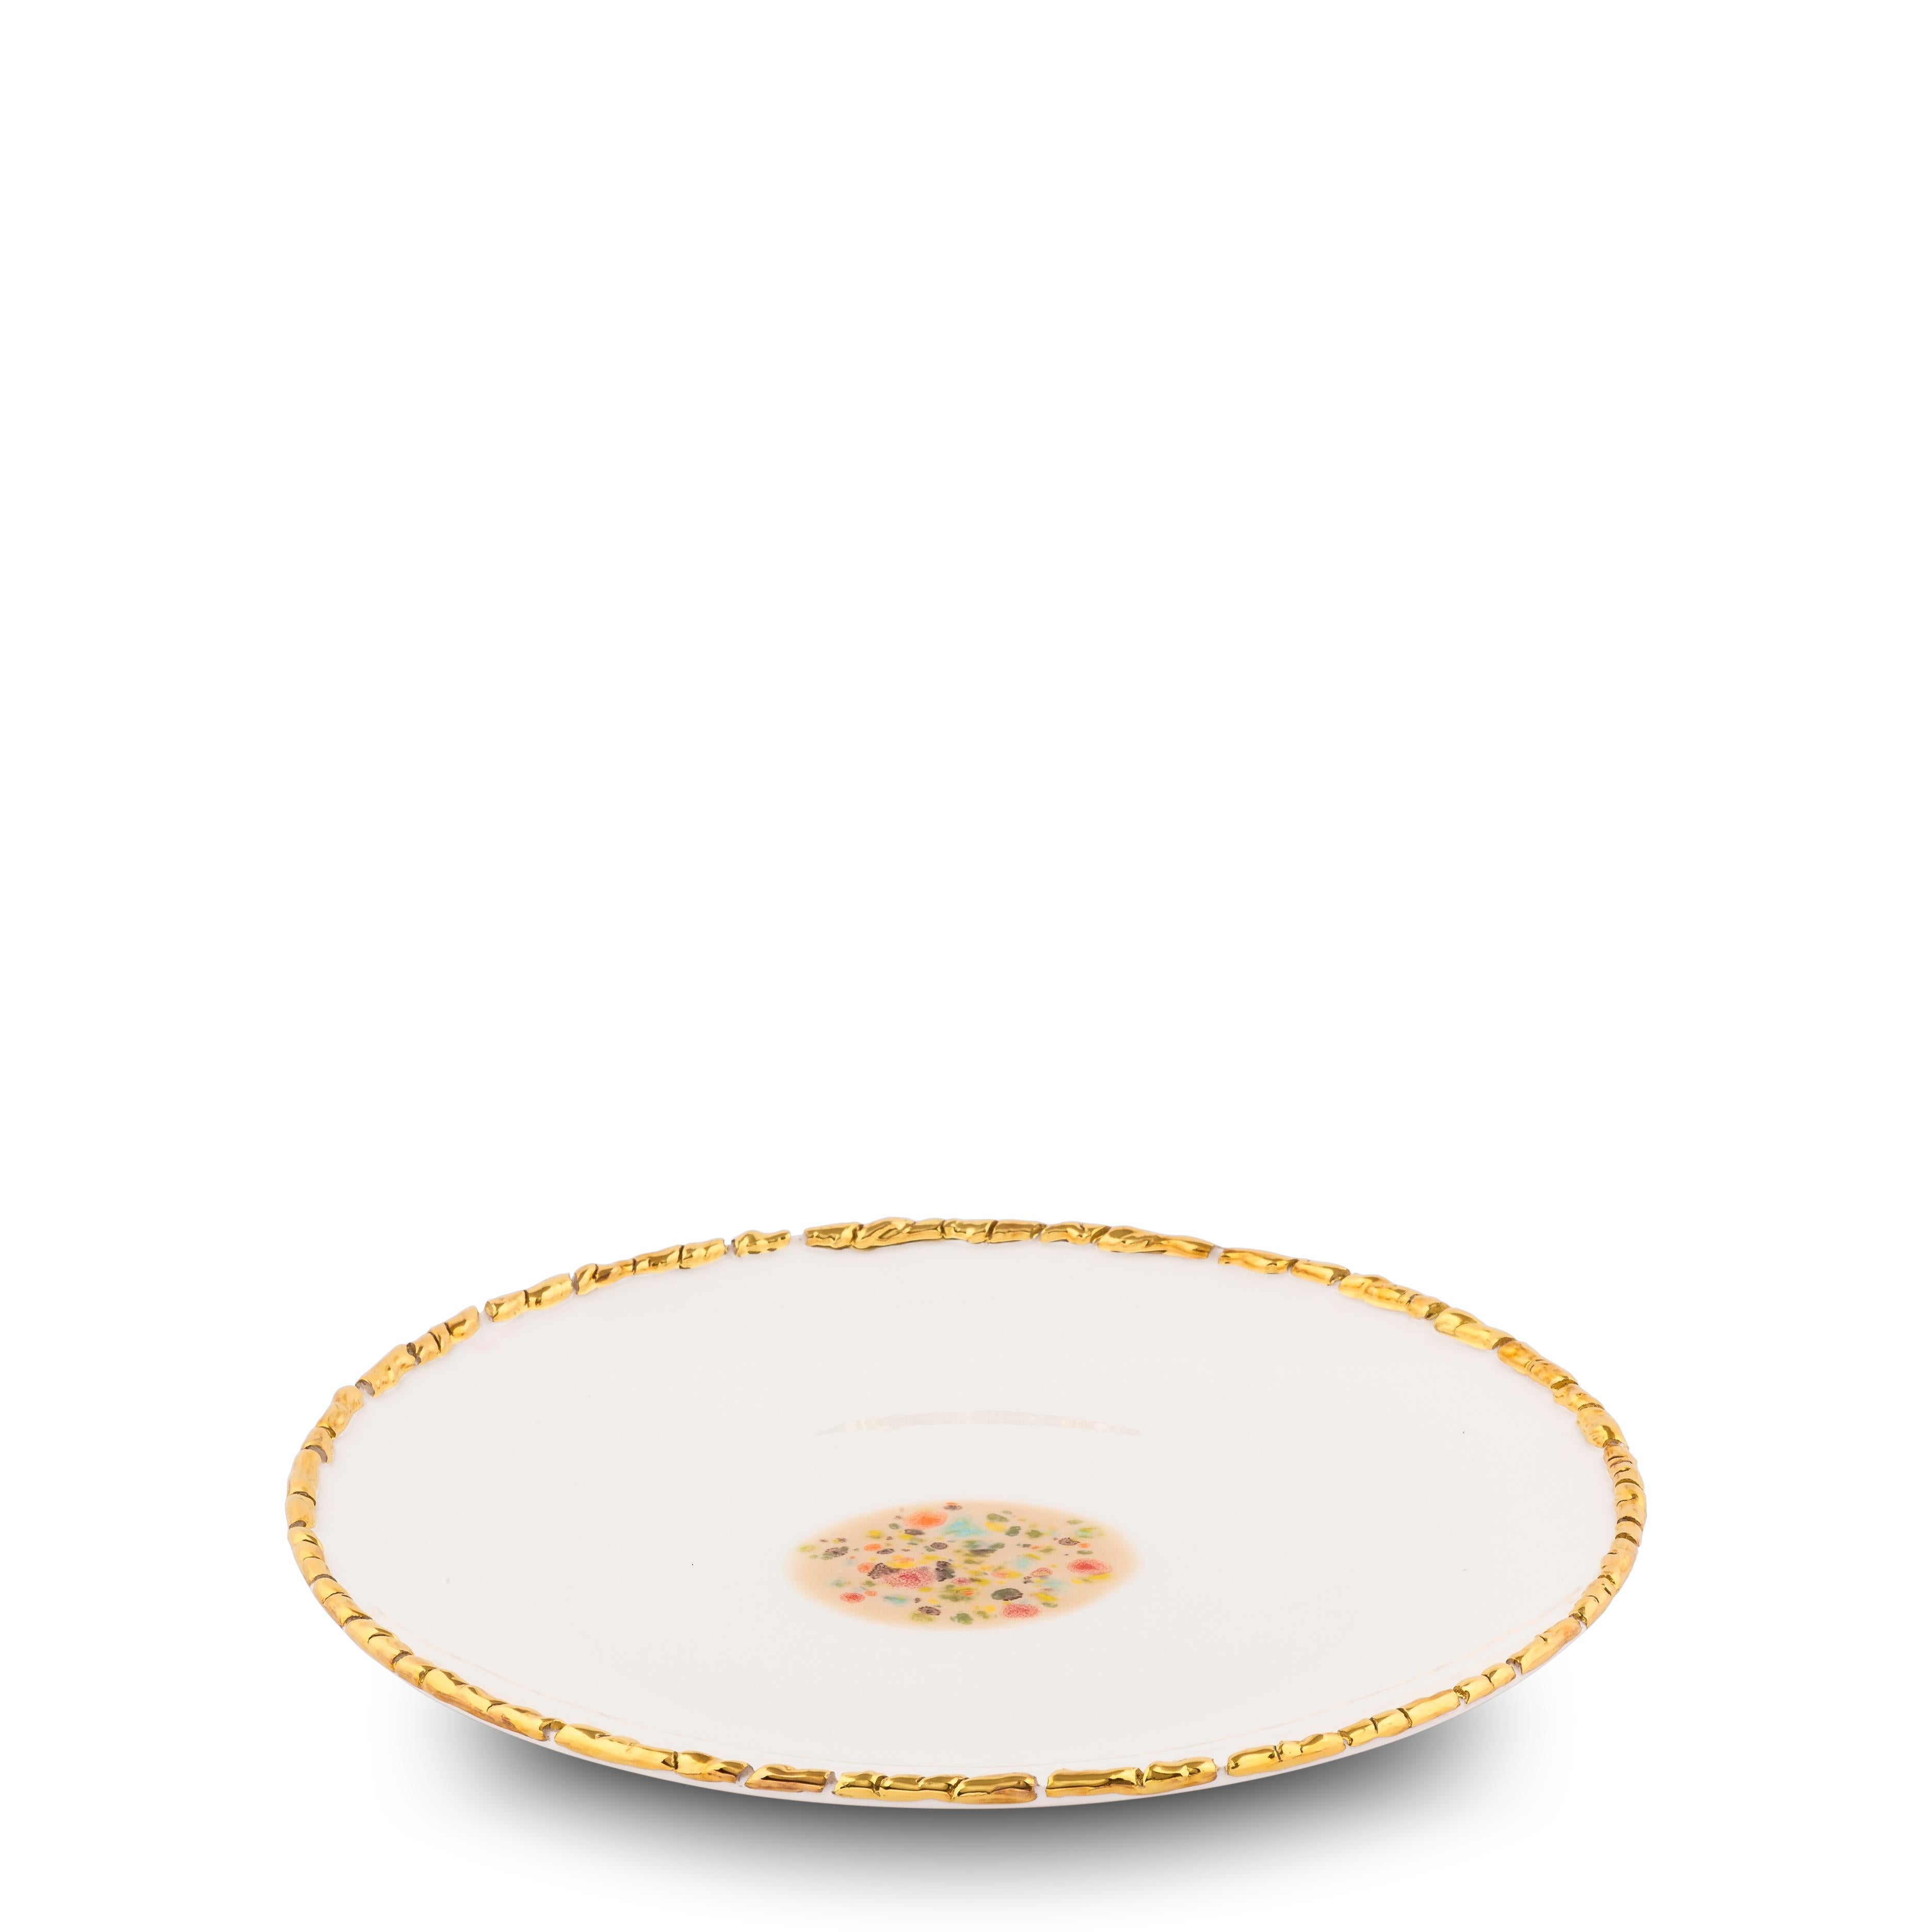 Diese in Italien aus feinstem Porzellan handgefertigten weißen Dessertteller mit Craquelé-Rand aus der Kollektion Chestnut haben einen originellen goldenen Craquelé-Rand, der die strahlend weiße Glasur und das sandfarbene, gepunktete Dekor in der